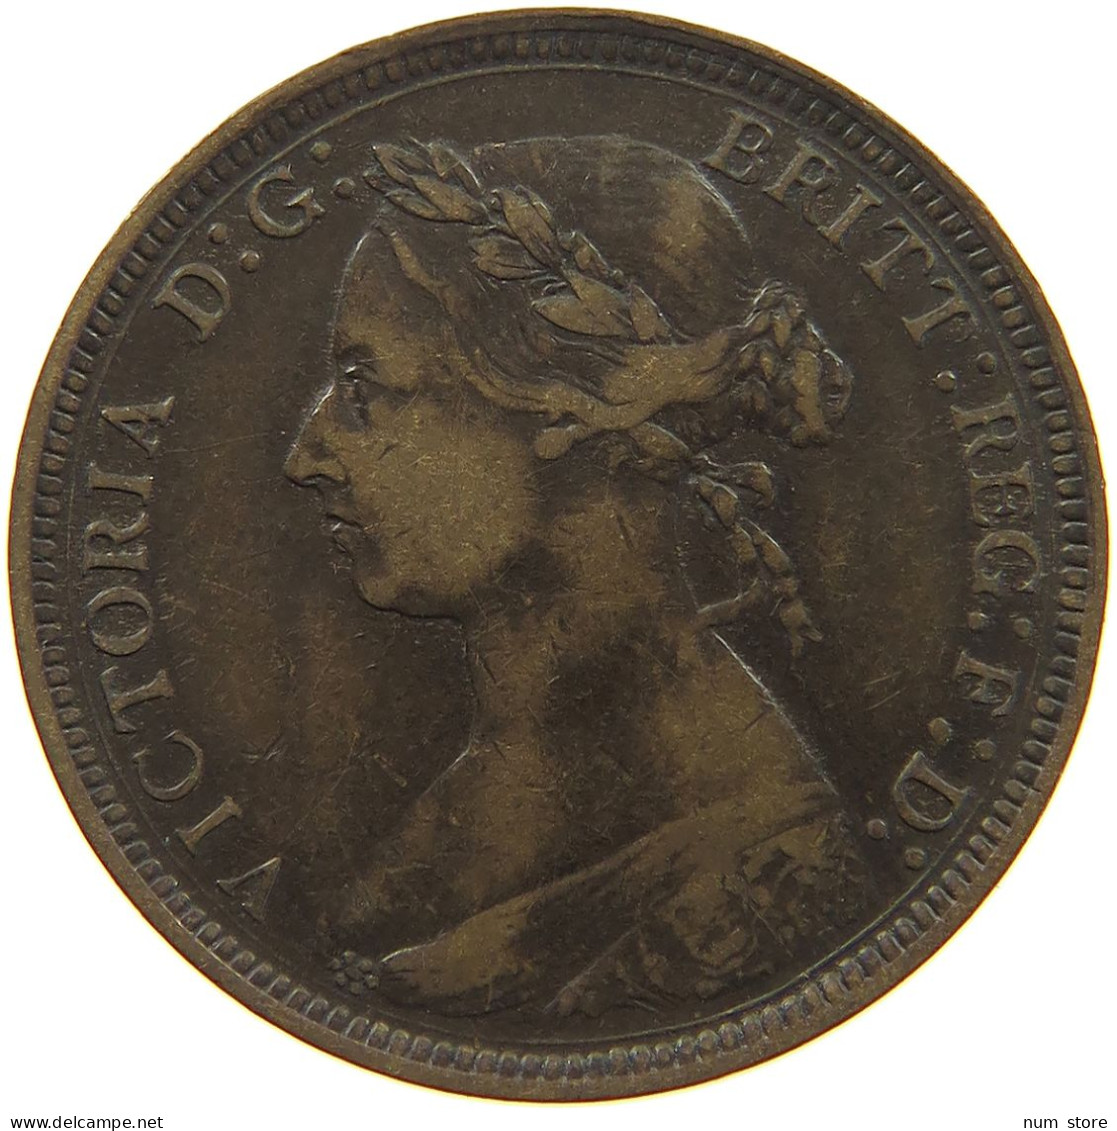 GREAT BRITAIN HALFPENNY 1887 Victoria 1837-1901 #c054 0173 - C. 1/2 Penny